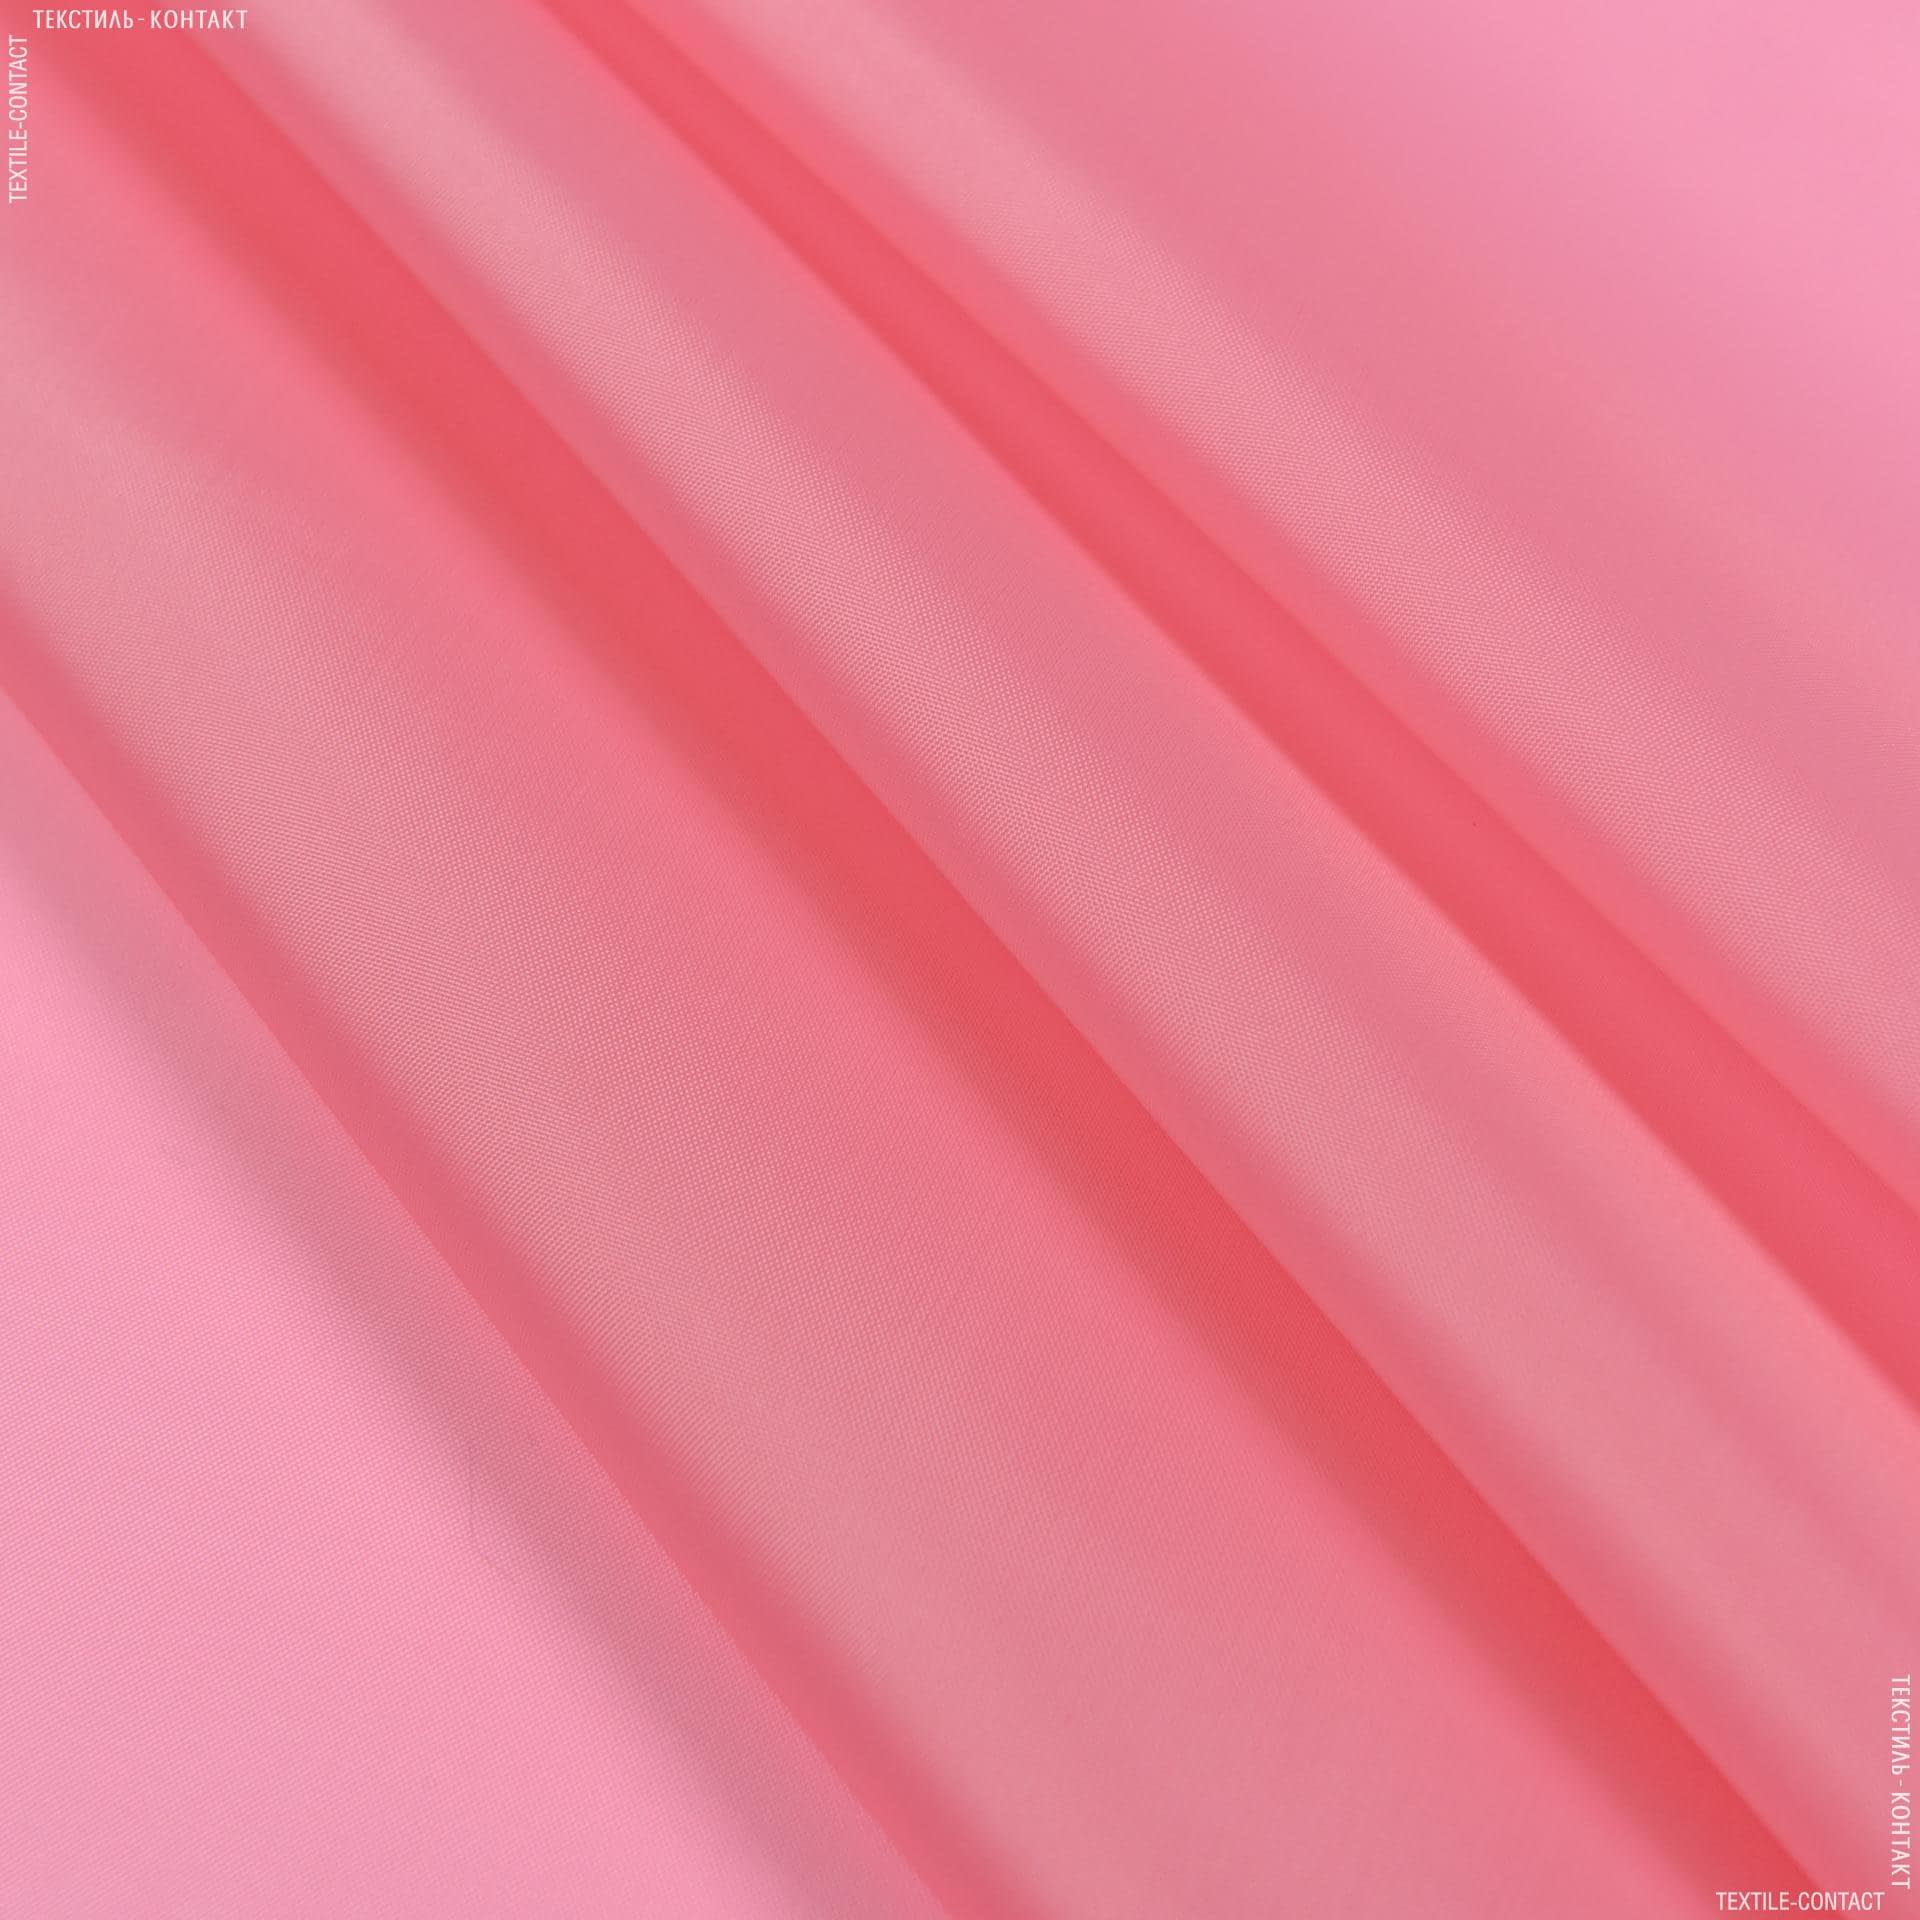 Ткани подкладочная ткань - Подкладка 190 розовый